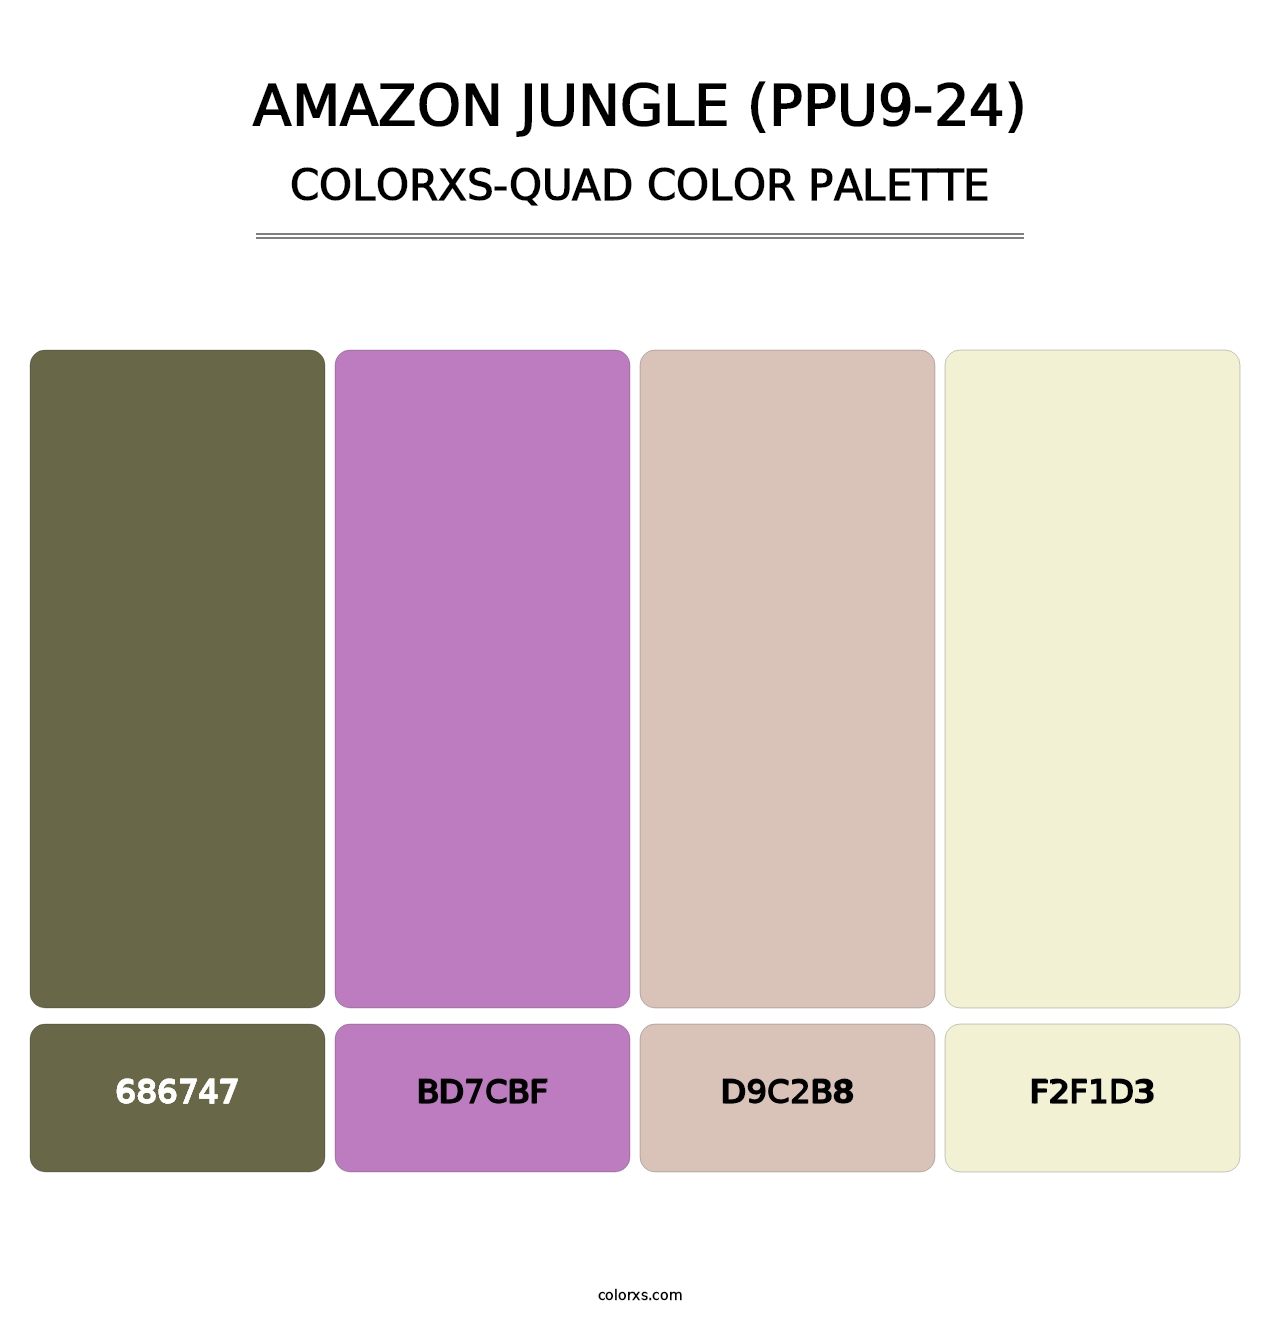 Amazon Jungle (PPU9-24) - Colorxs Quad Palette